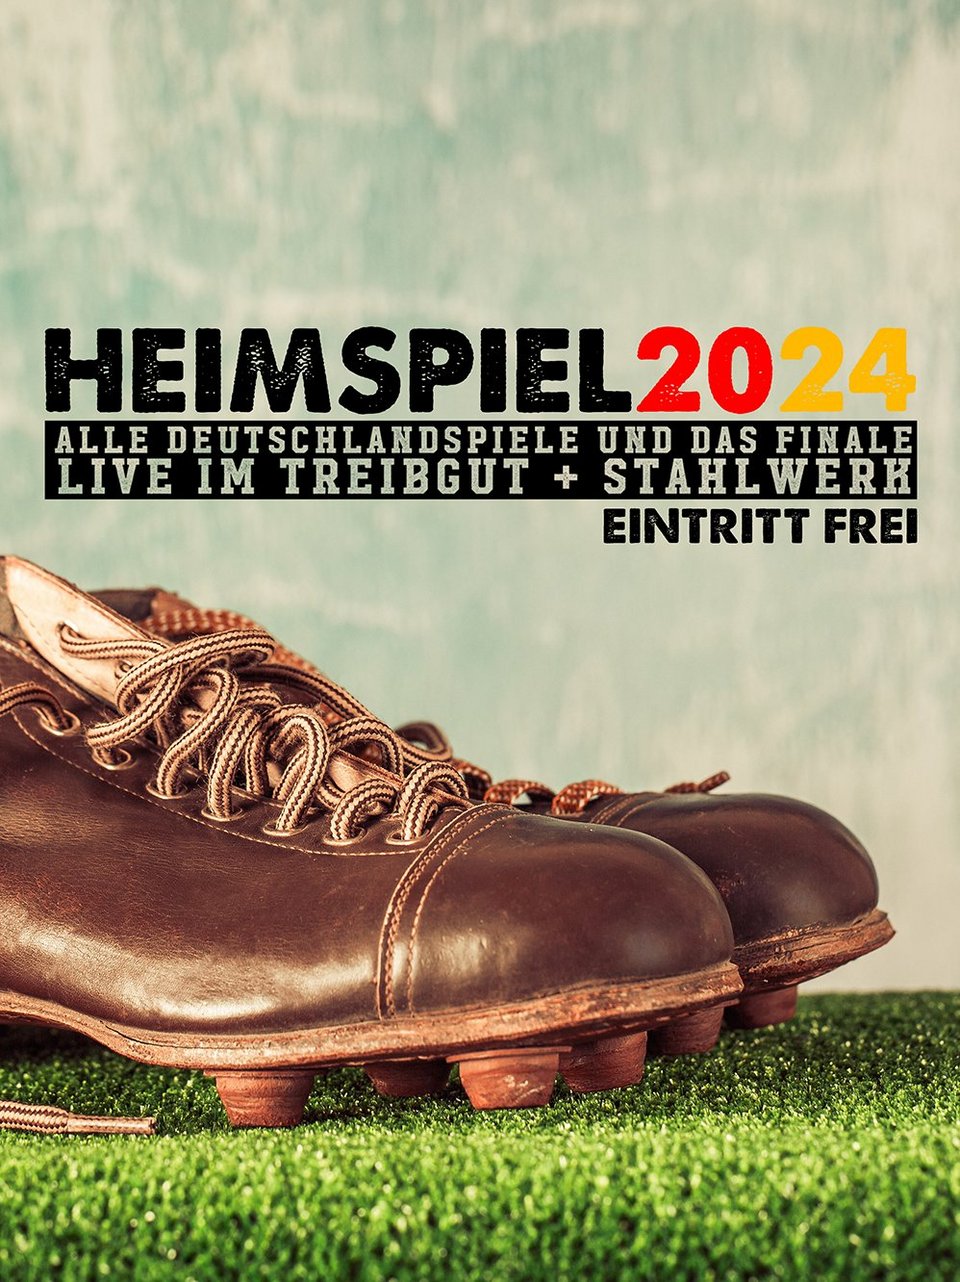 HEIMSPIEL 2024 - Die Fussball EM im Treibgut! 